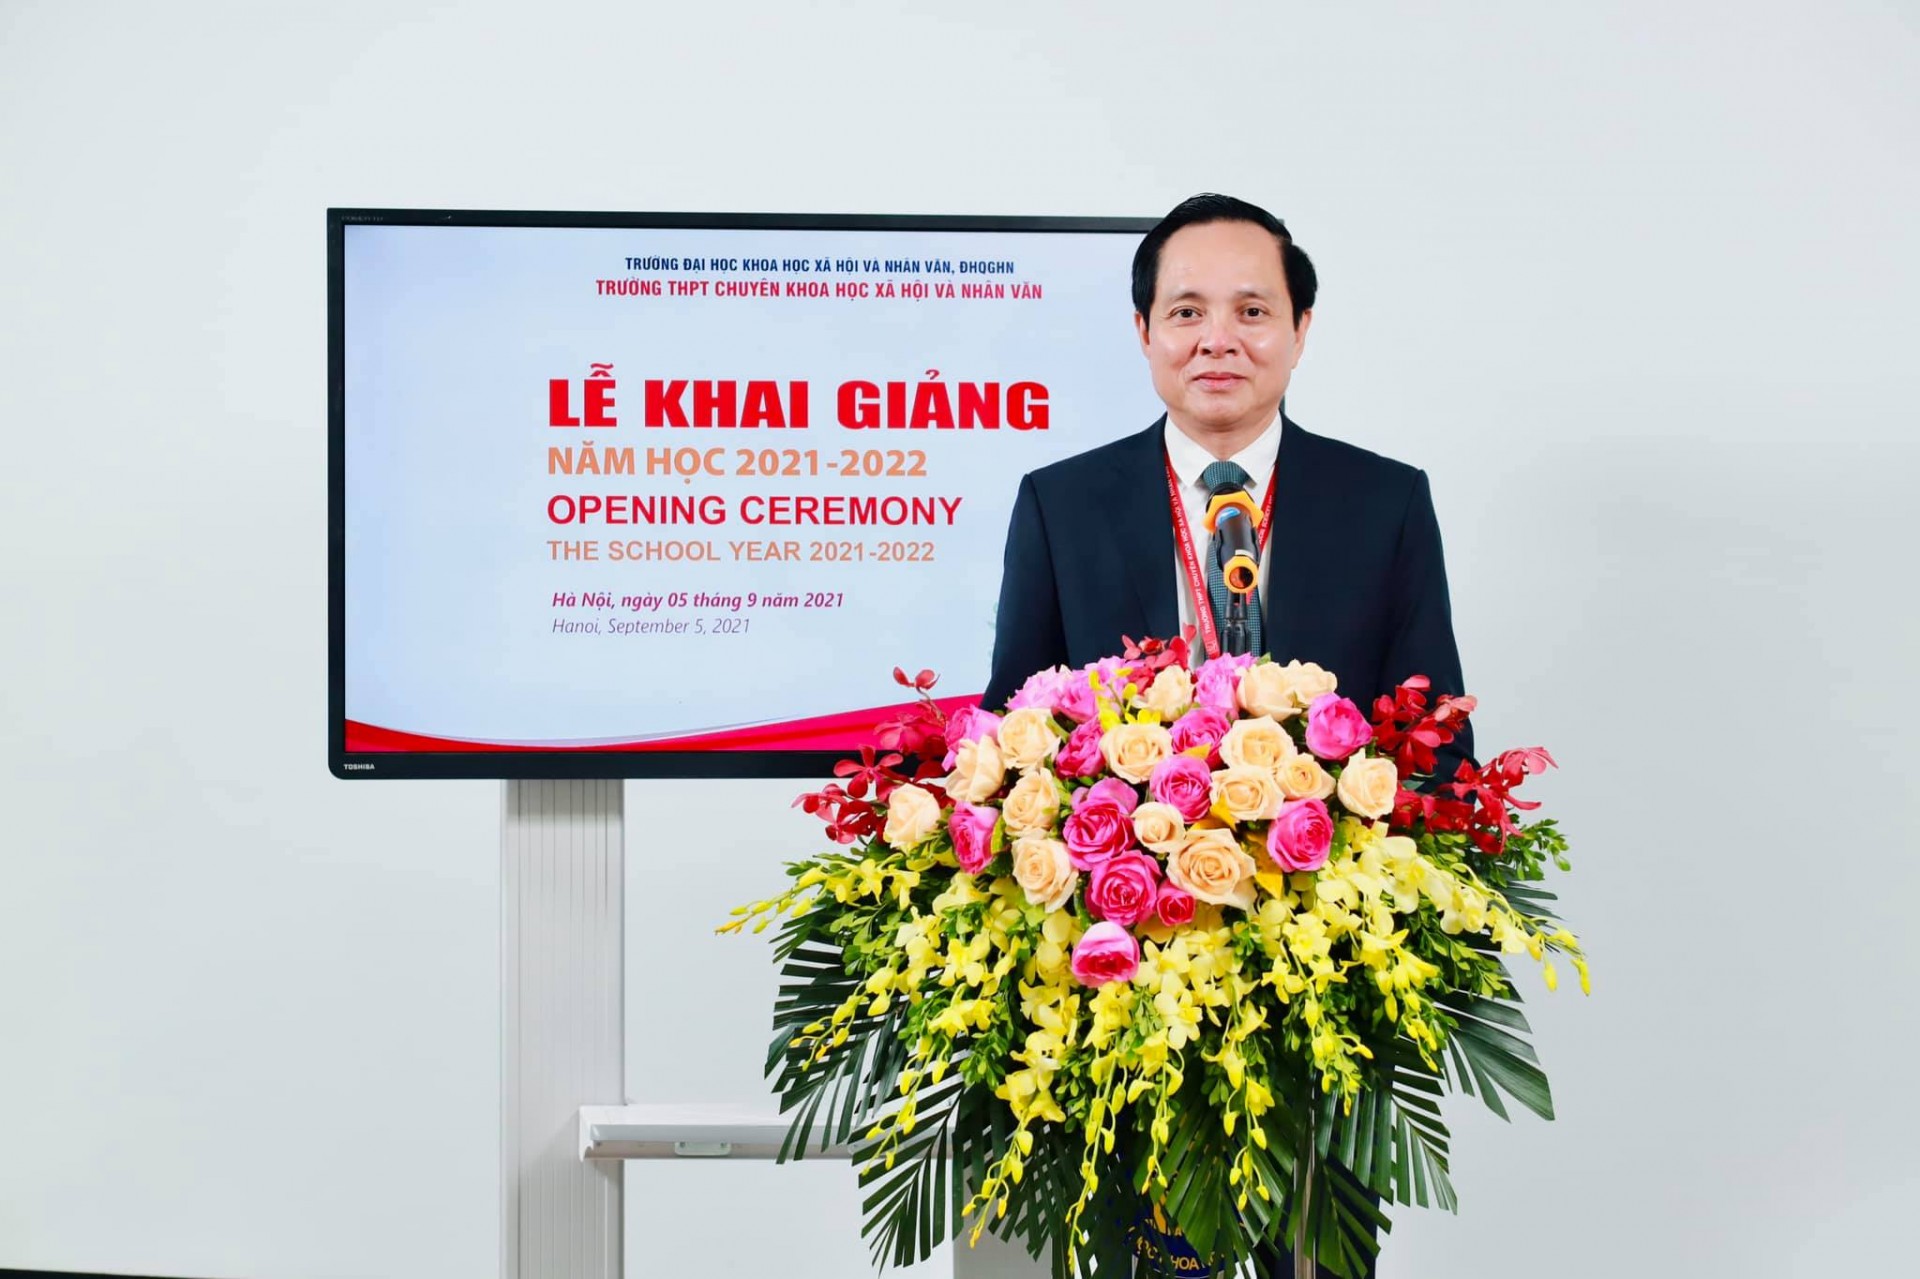 May be an image of 1 person, standing, flower, indoor and text that says 'TRƯỜNG HỘIV ĐHOGHN TRƯỜNG THPT CHUYÊN KHOA AHOIV NHÂN VĂN LỄ KHAI GIẢNG NĂM HỌC 2021-2022 OPENING CEREMONY THE SCHOOL YEAR 2021 -2022 Hà tháng năm 2021 Hanoi, Septembe 2021'